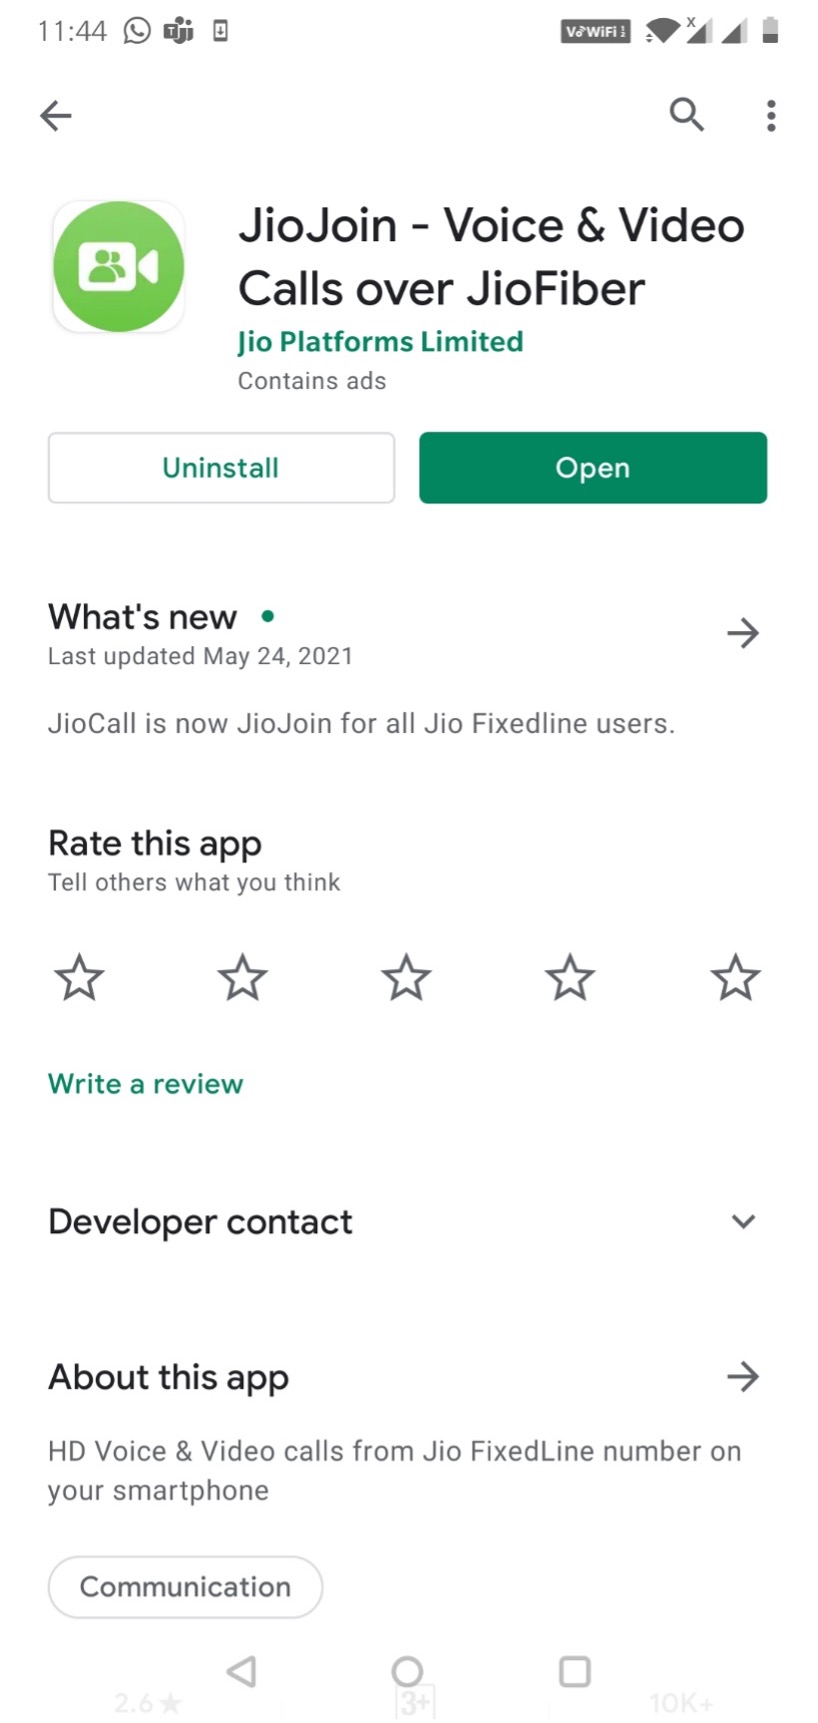 Download JioJoin app